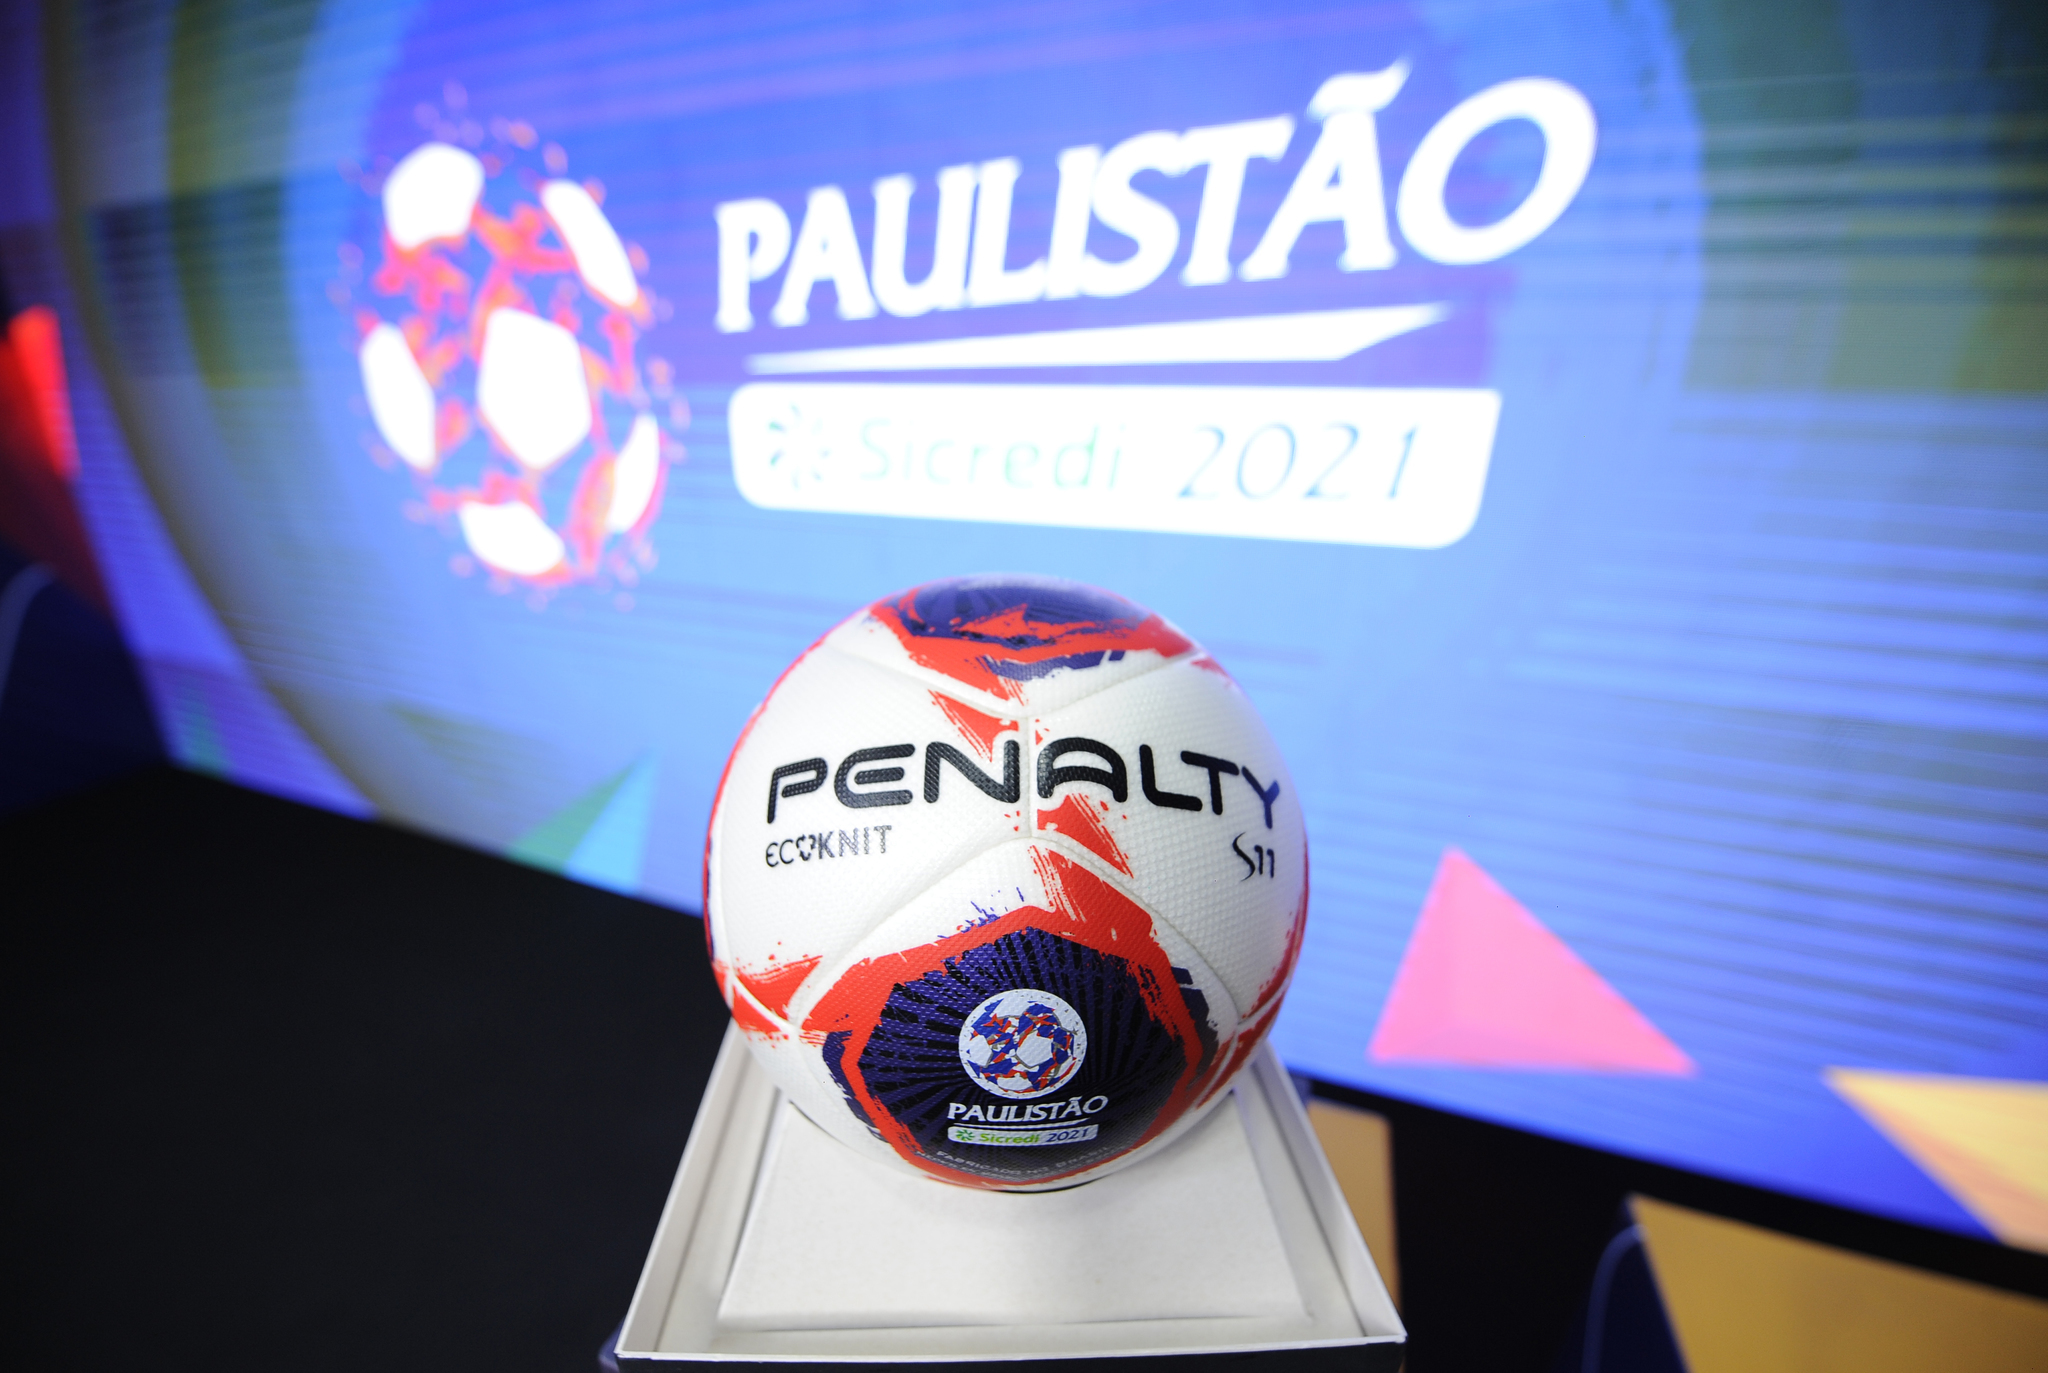 Federação Paulista sorteia grupos do Campeonato Paulista 2021; confira